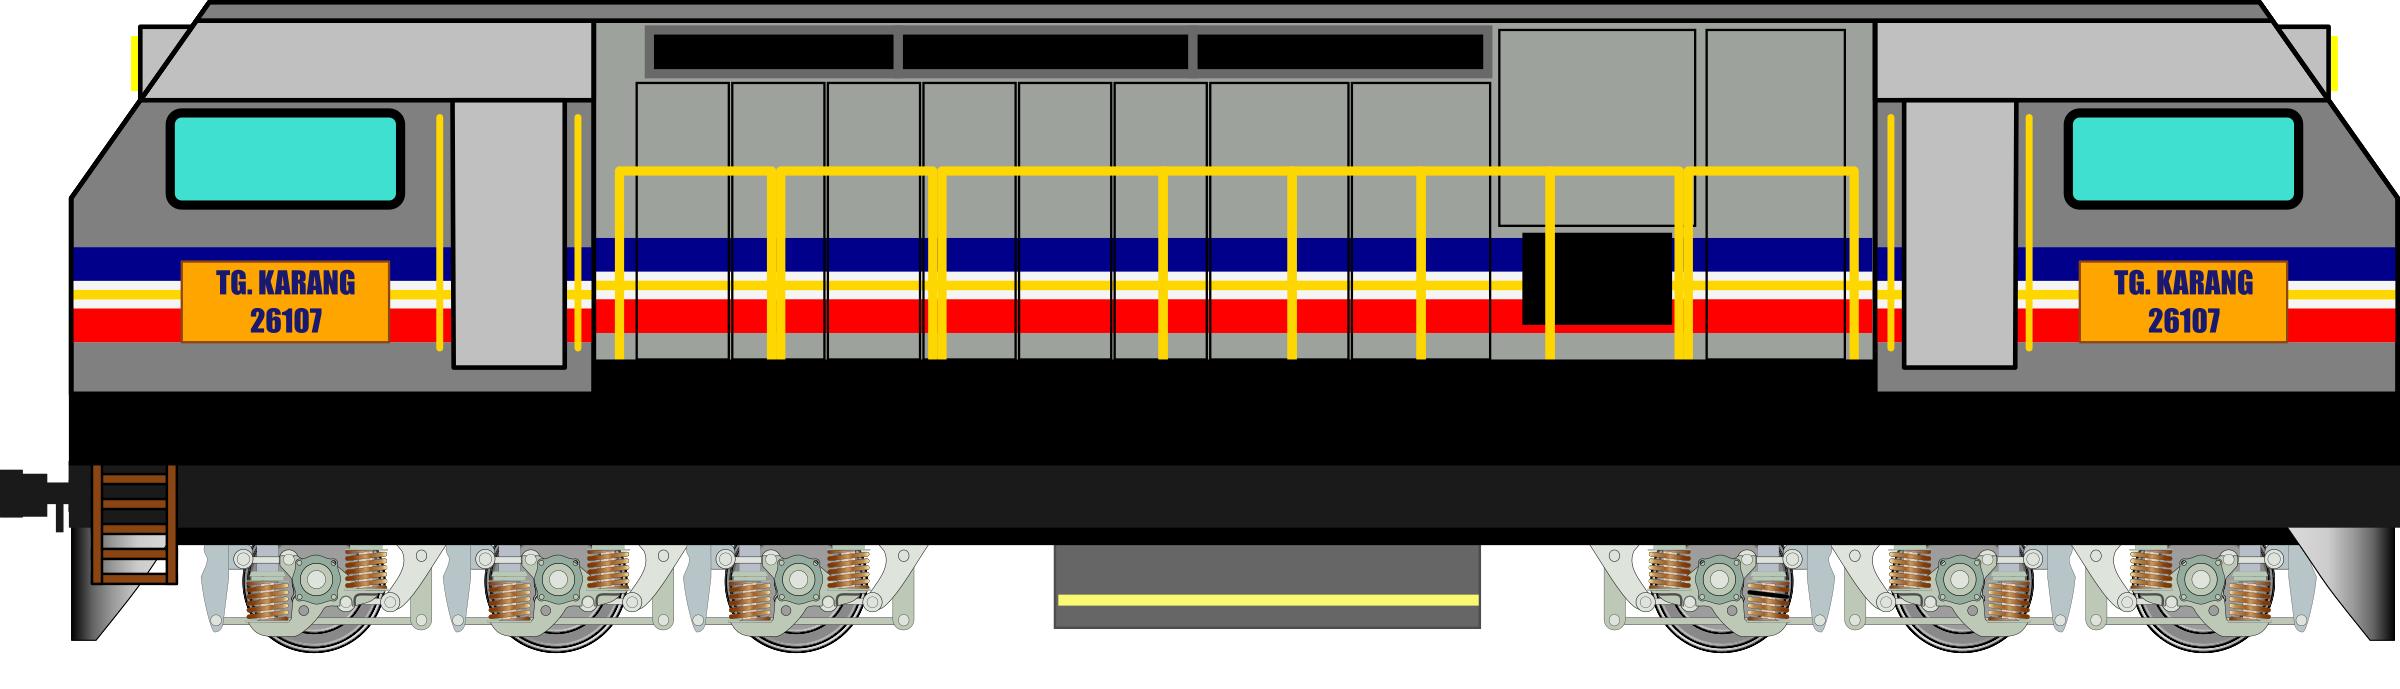 KTM Class 26 Locomotive png